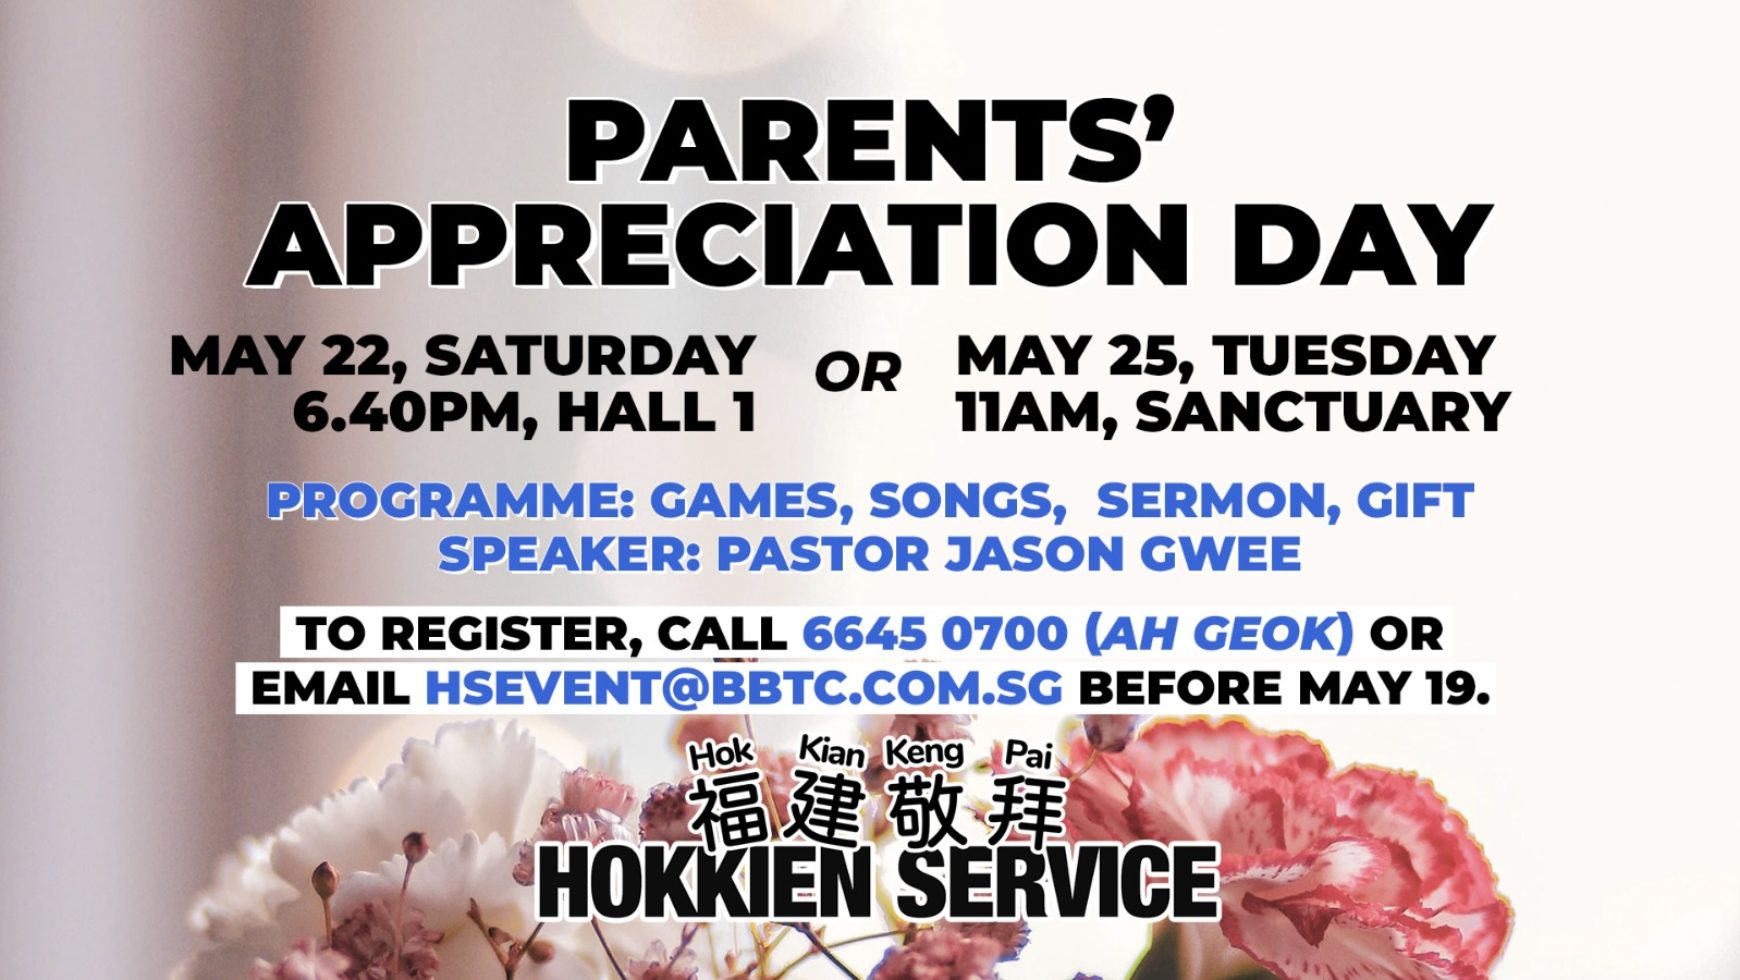 Parents’ Appreciation Day